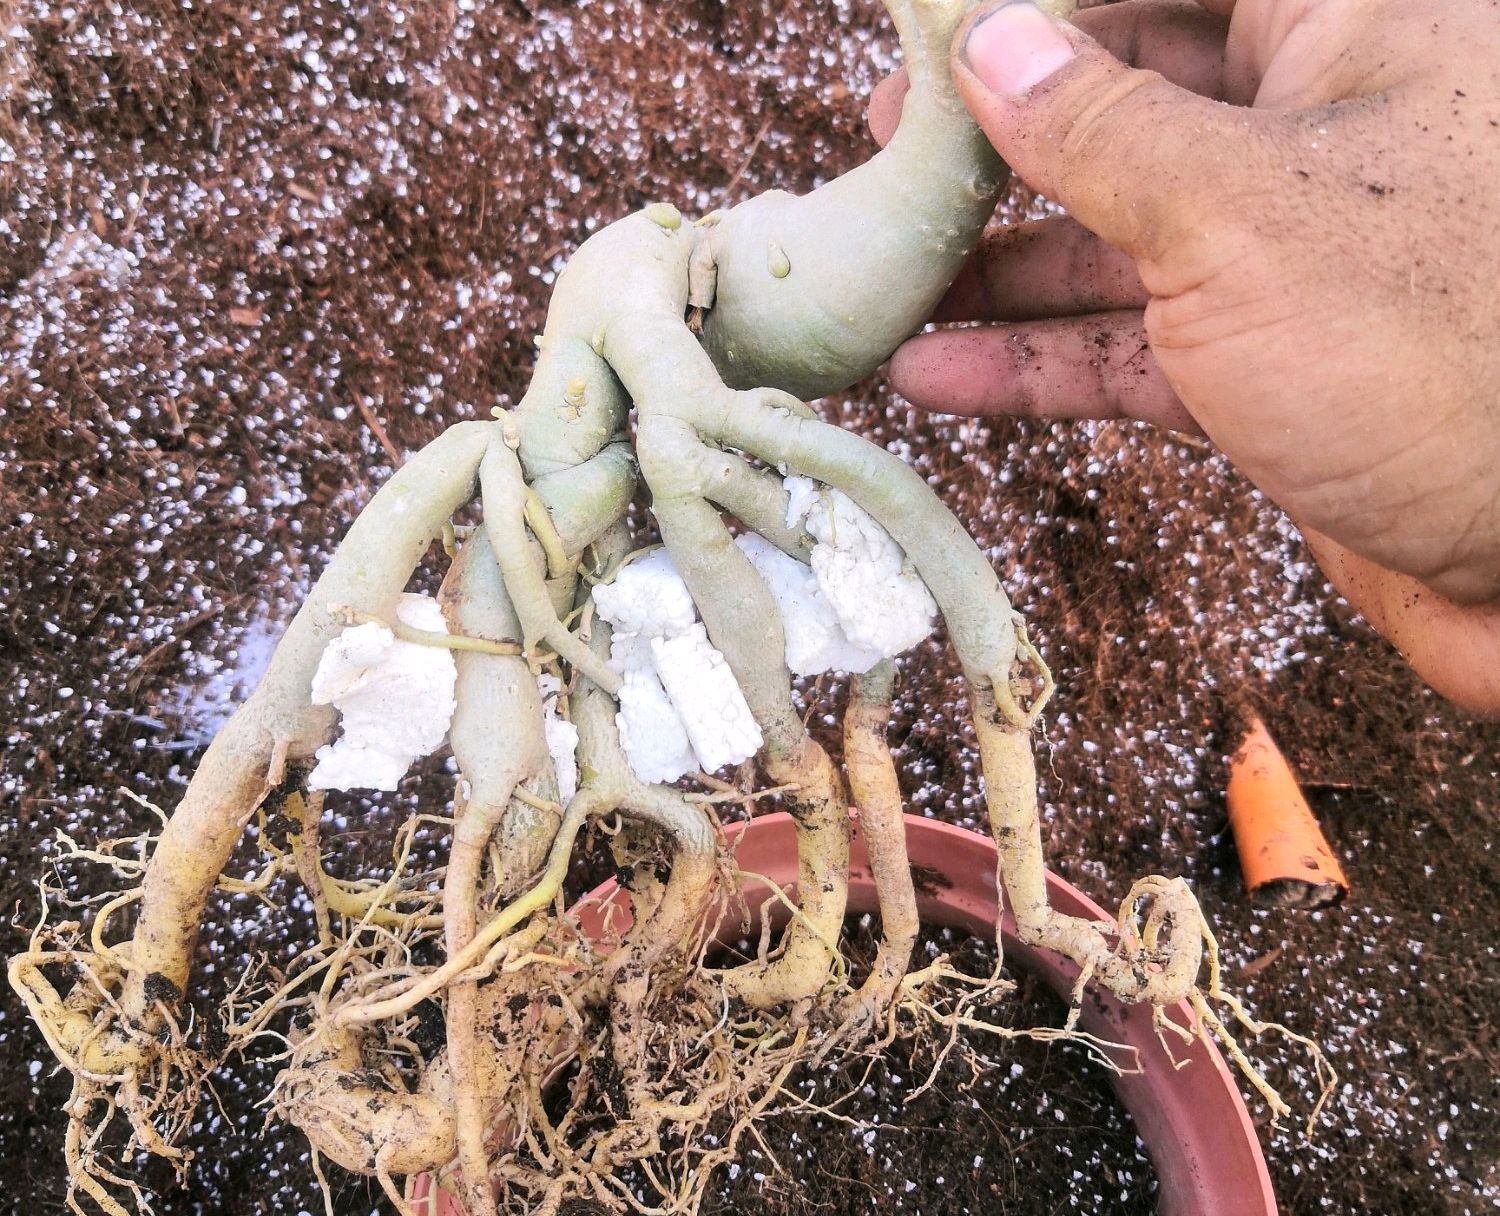 沙漠玫瑰怎么给根系造型?3种方法,盘出造型根,好看有型